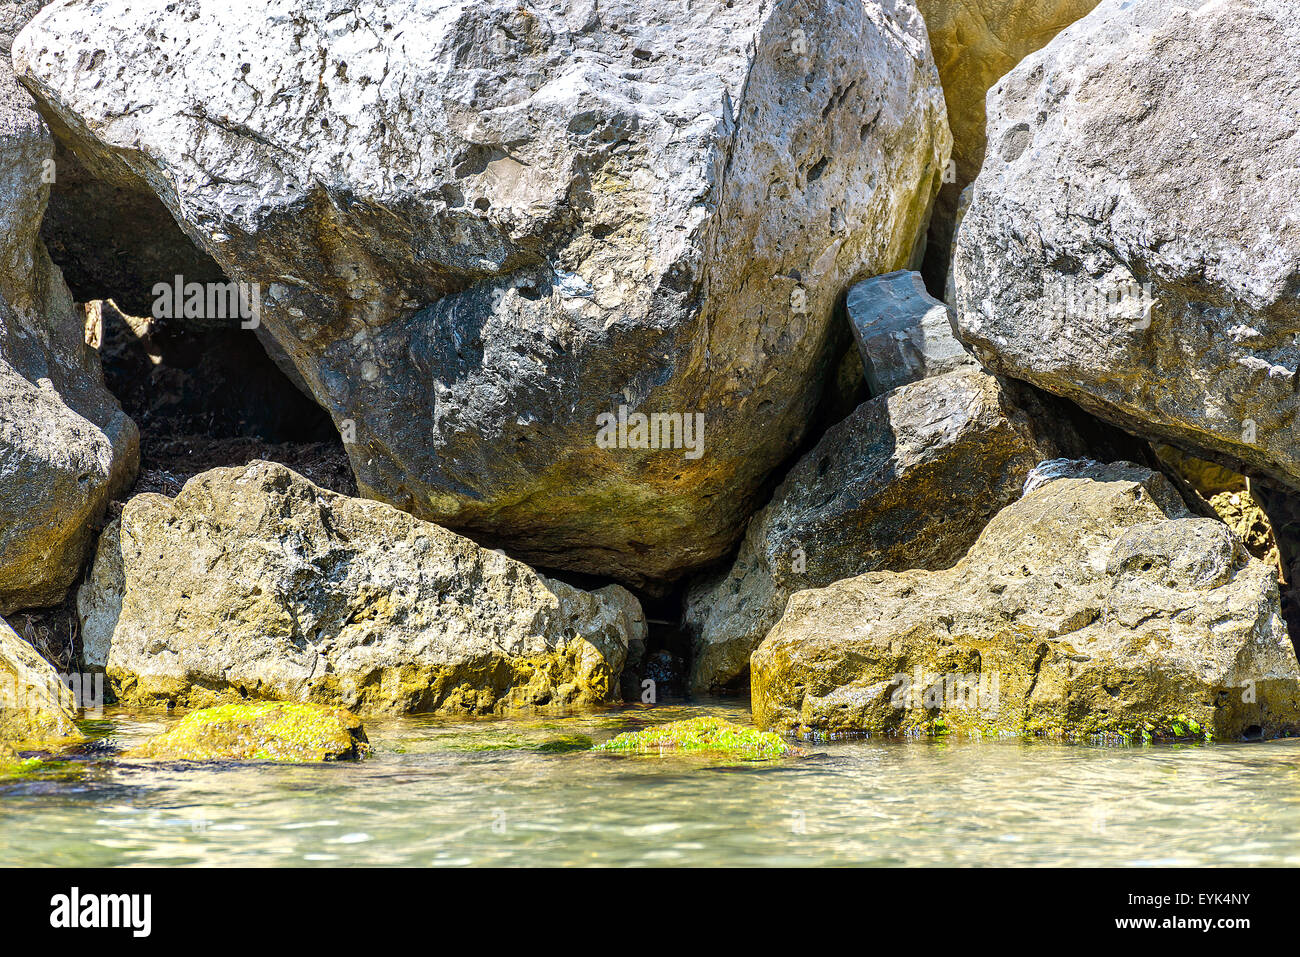 Cubiertas con piedras de algas que sobresalen del mar Foto de stock